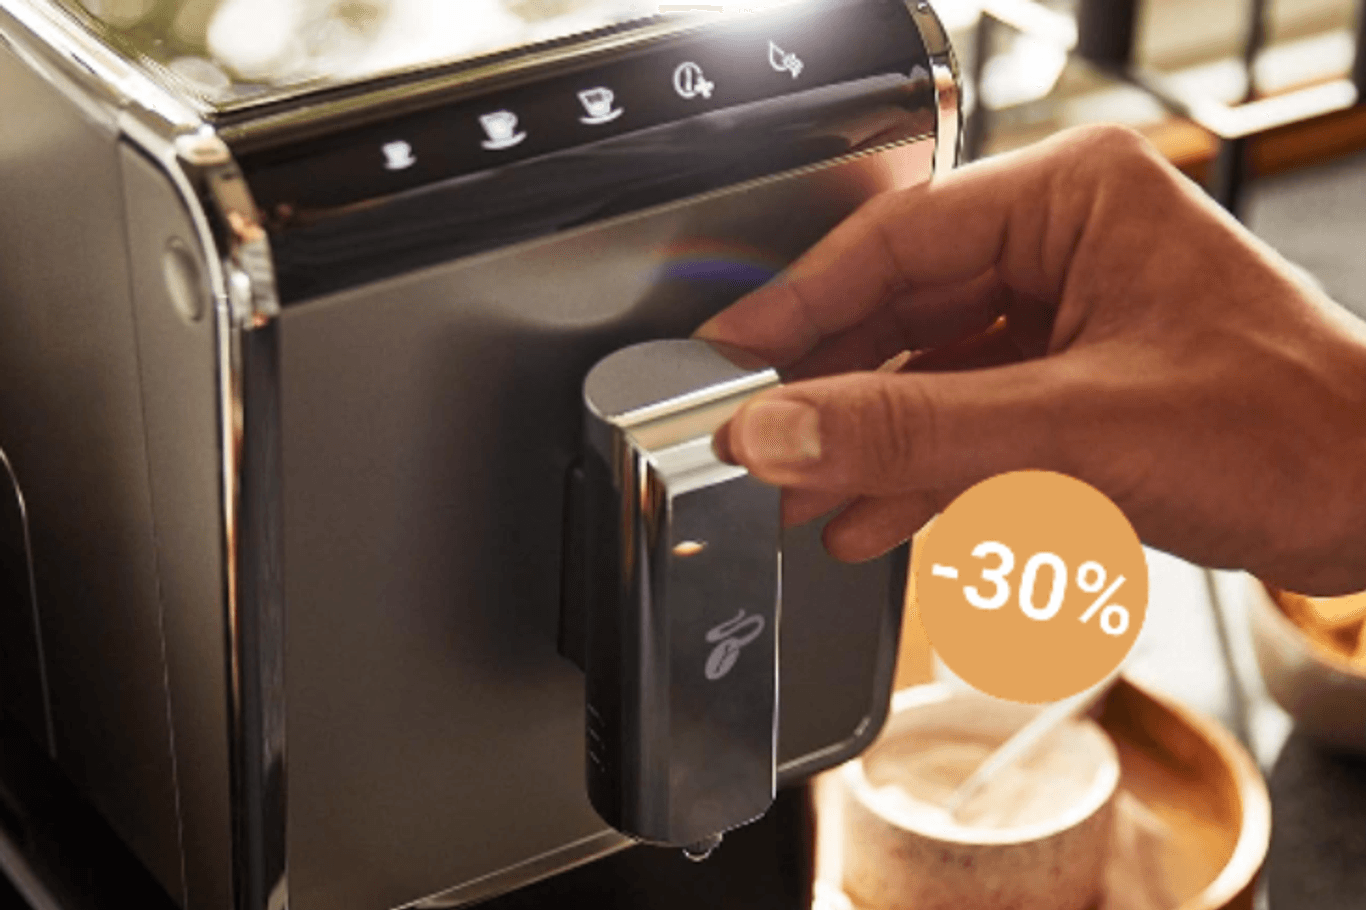 Entspannen Sie sich und gönnen Sie sich etwas Besonderes: Heute erhalten Sie bei Mediamarkt einen Kaffeevollautomaten von Tchibo zu einem noch nie dagewesenen Preis.